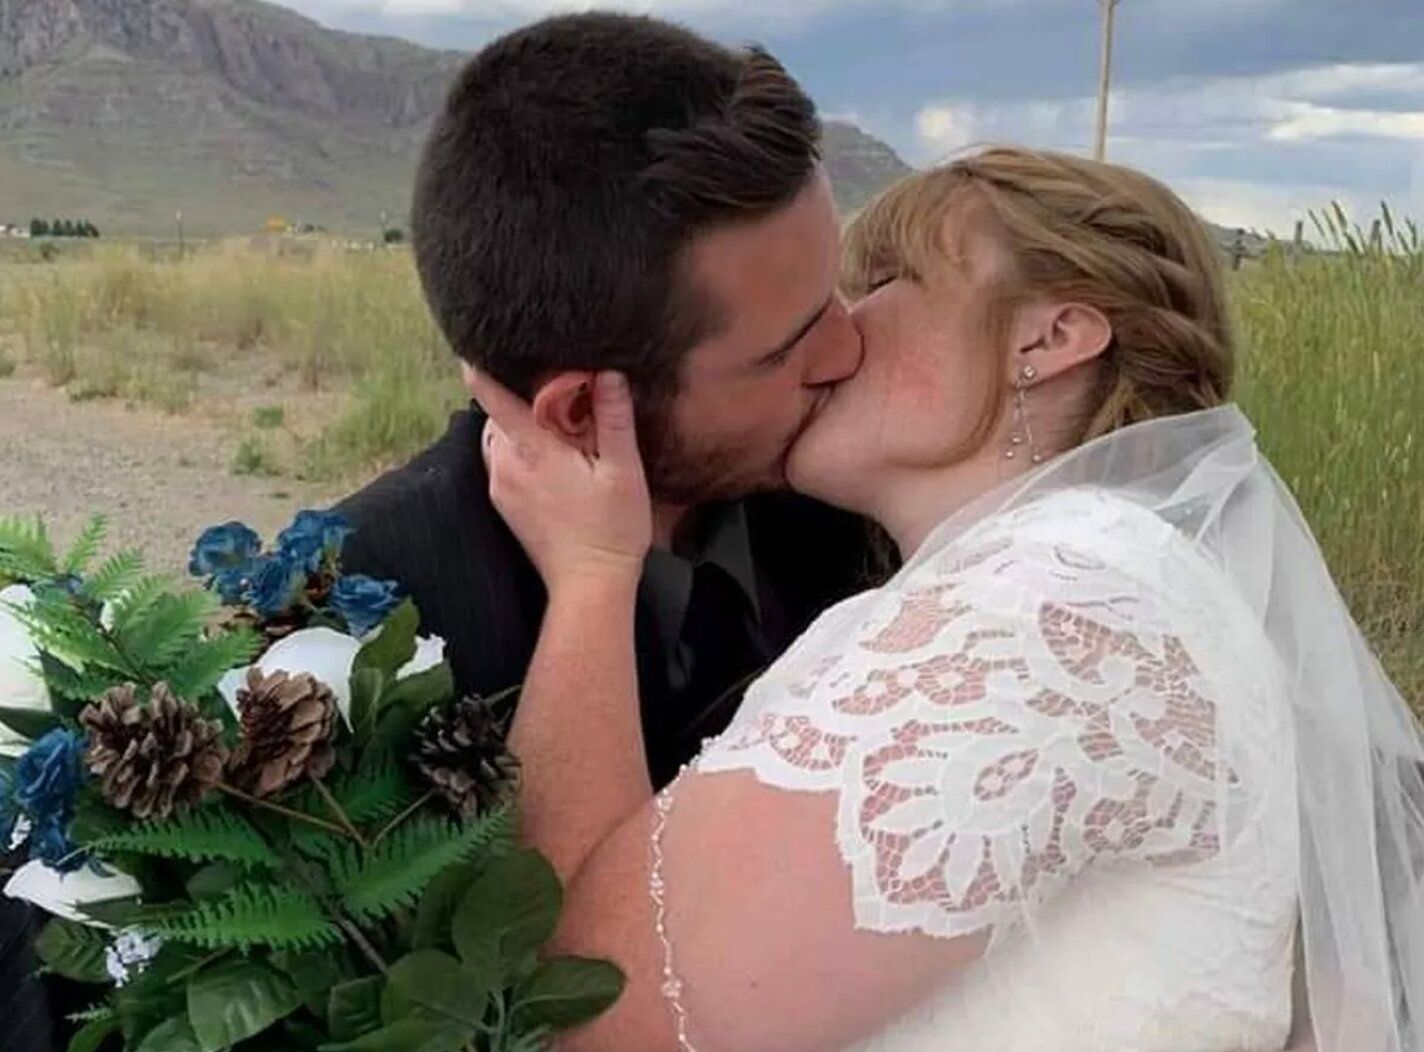 Пара вперше поцілувалася аж на весіллі - як це вплинуло на стосунки